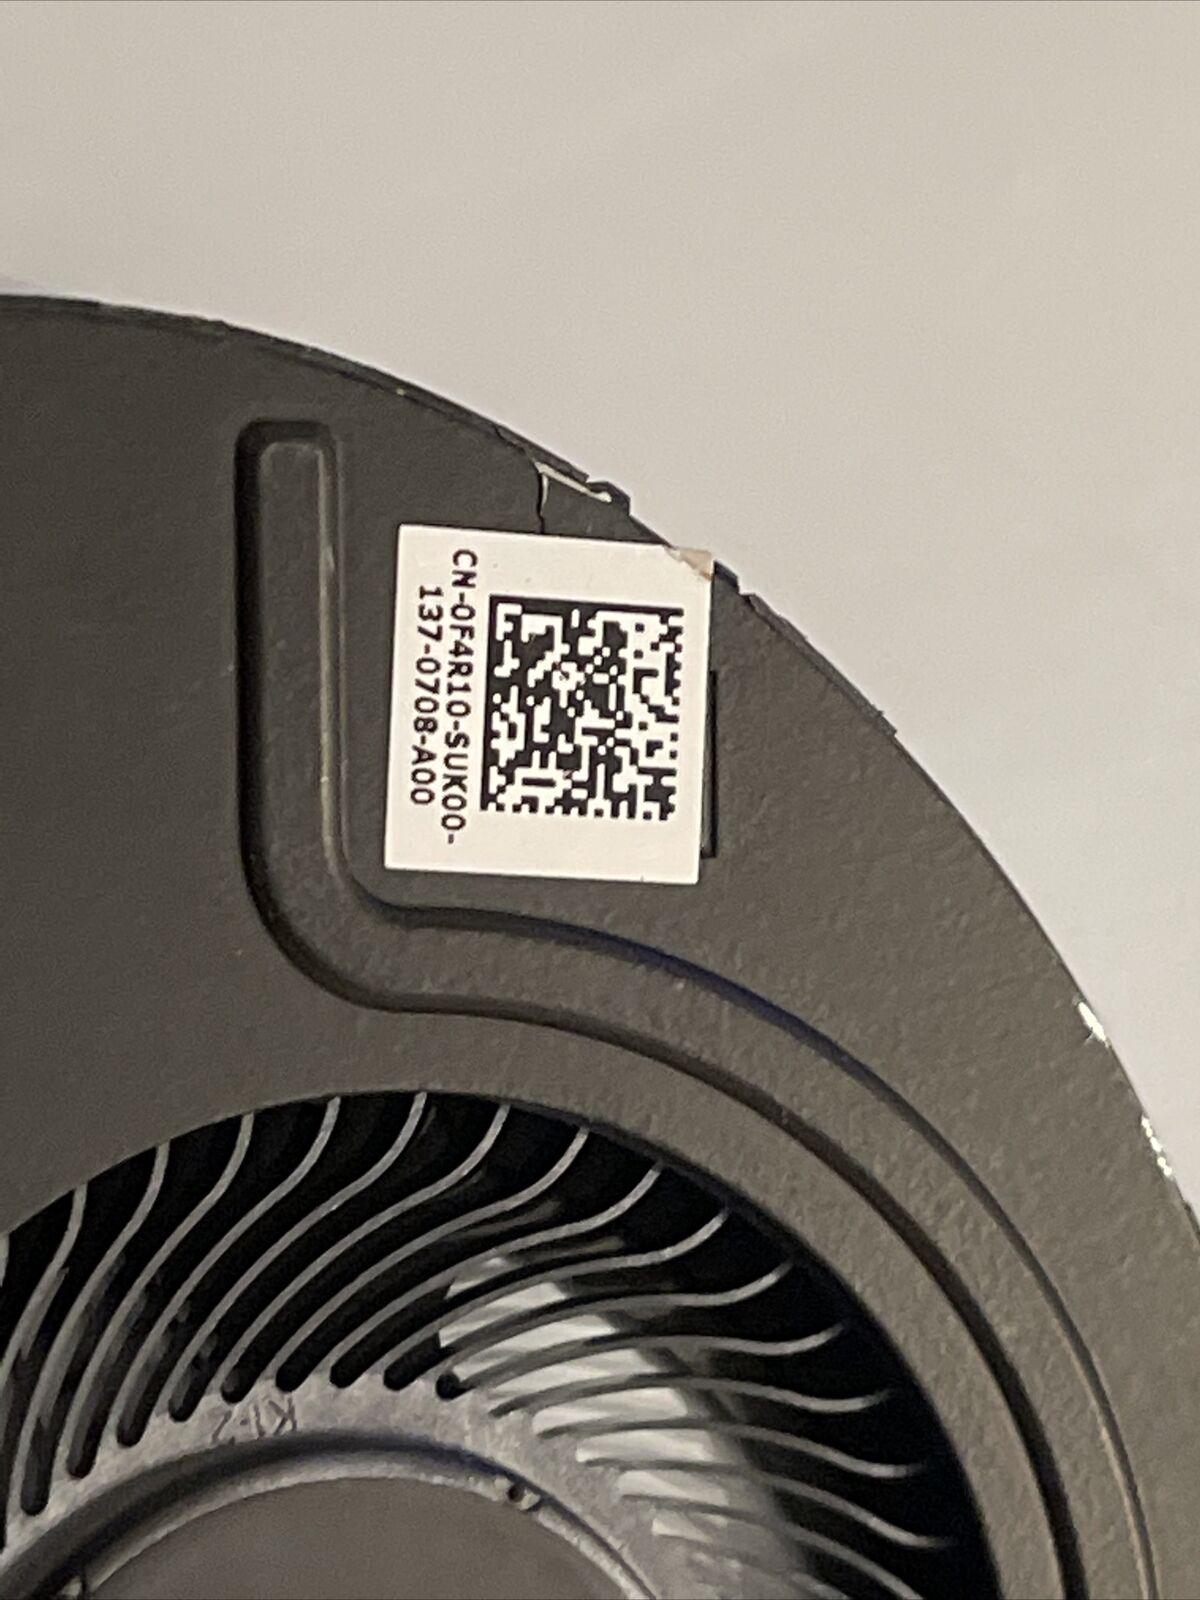 DELL Inspiron 14 7400 Cpu cooler fan EG50040S1-CK30-S9A F4R10 023.100JA.0001